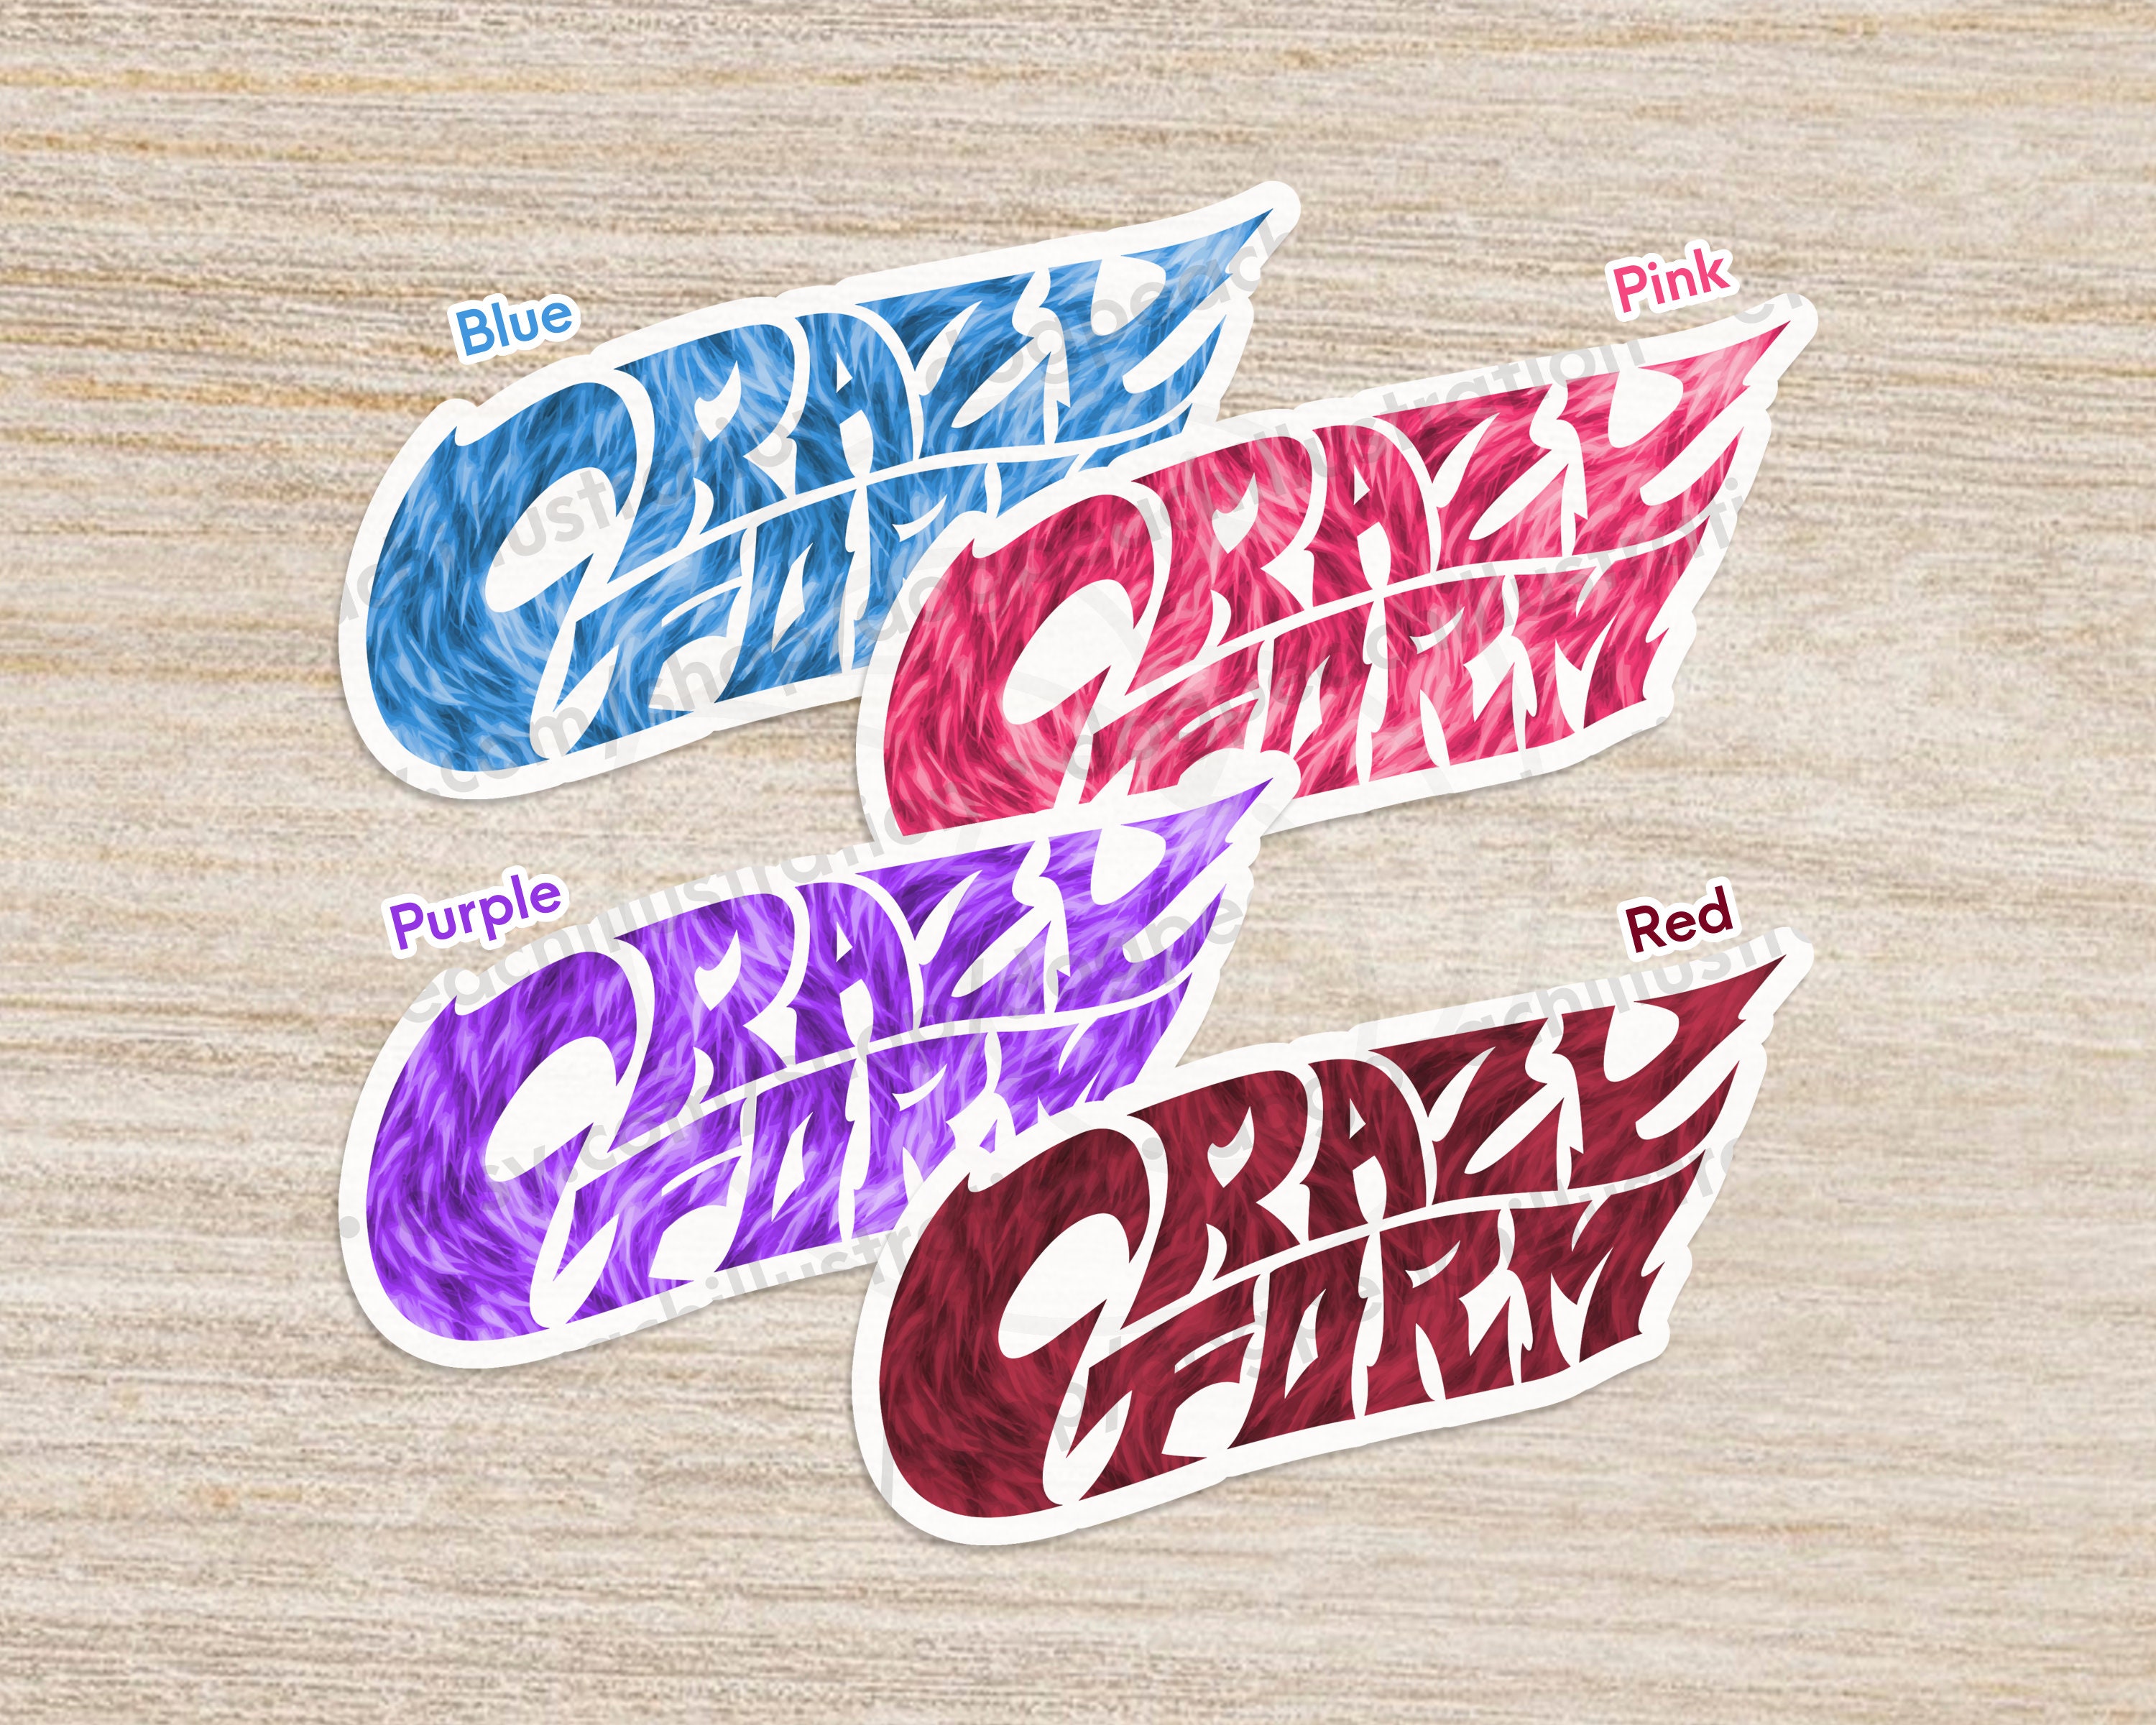 ATEEZ Eras Sticker 3.6 Deja Vu Bouncy Crazy Form Inception the